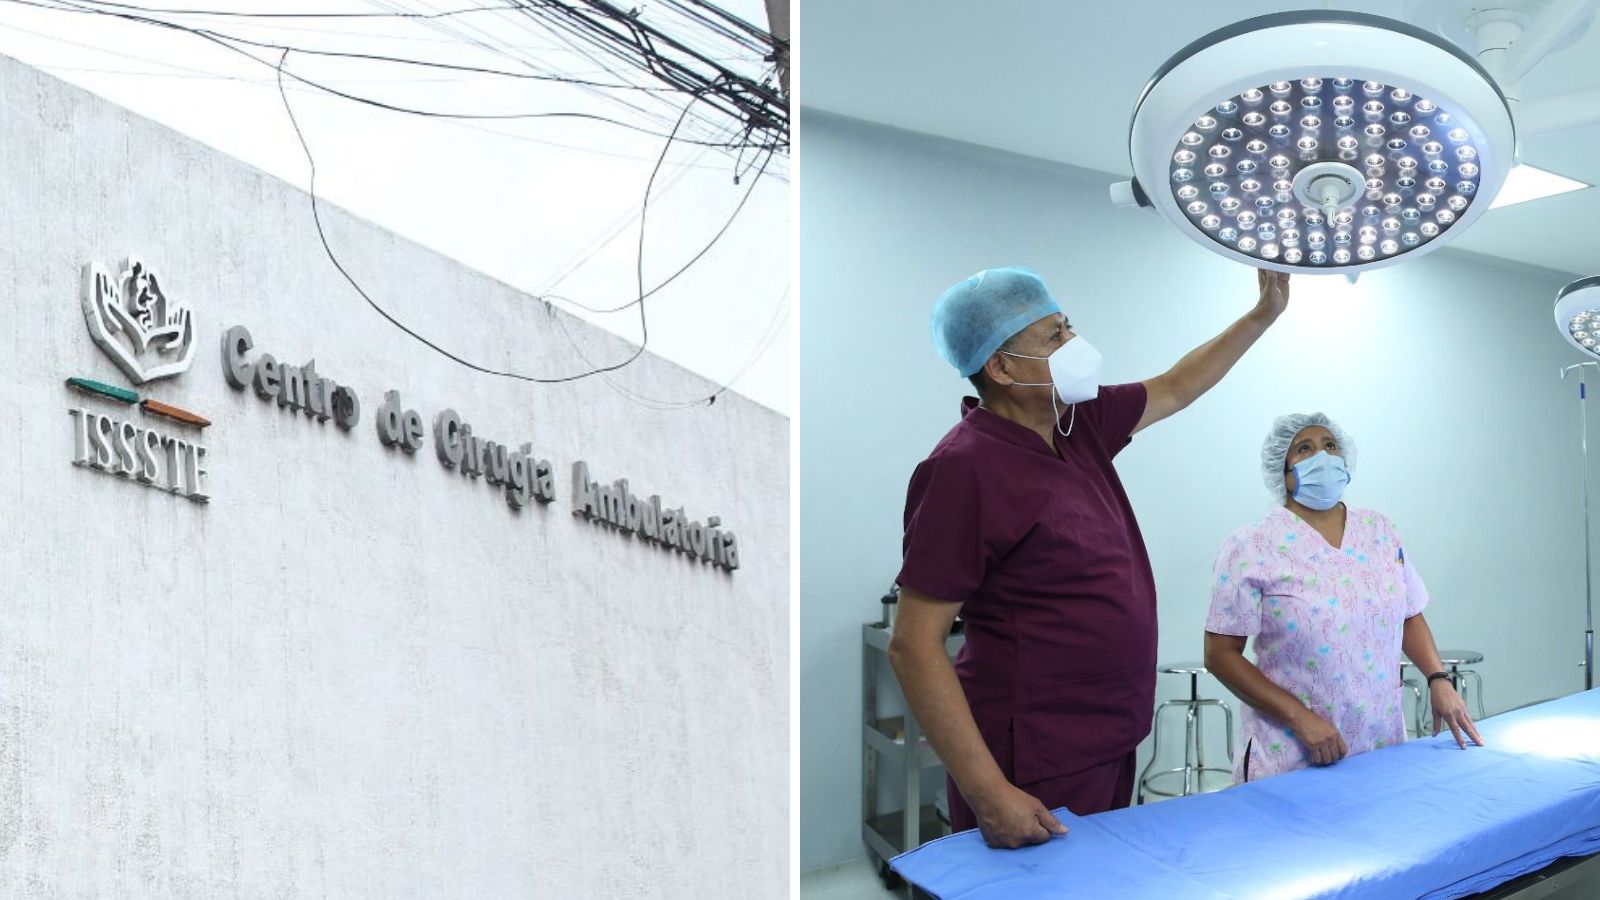 ISSSTE renueva el Centro de Cirugía Ambulatoria de la CDMX